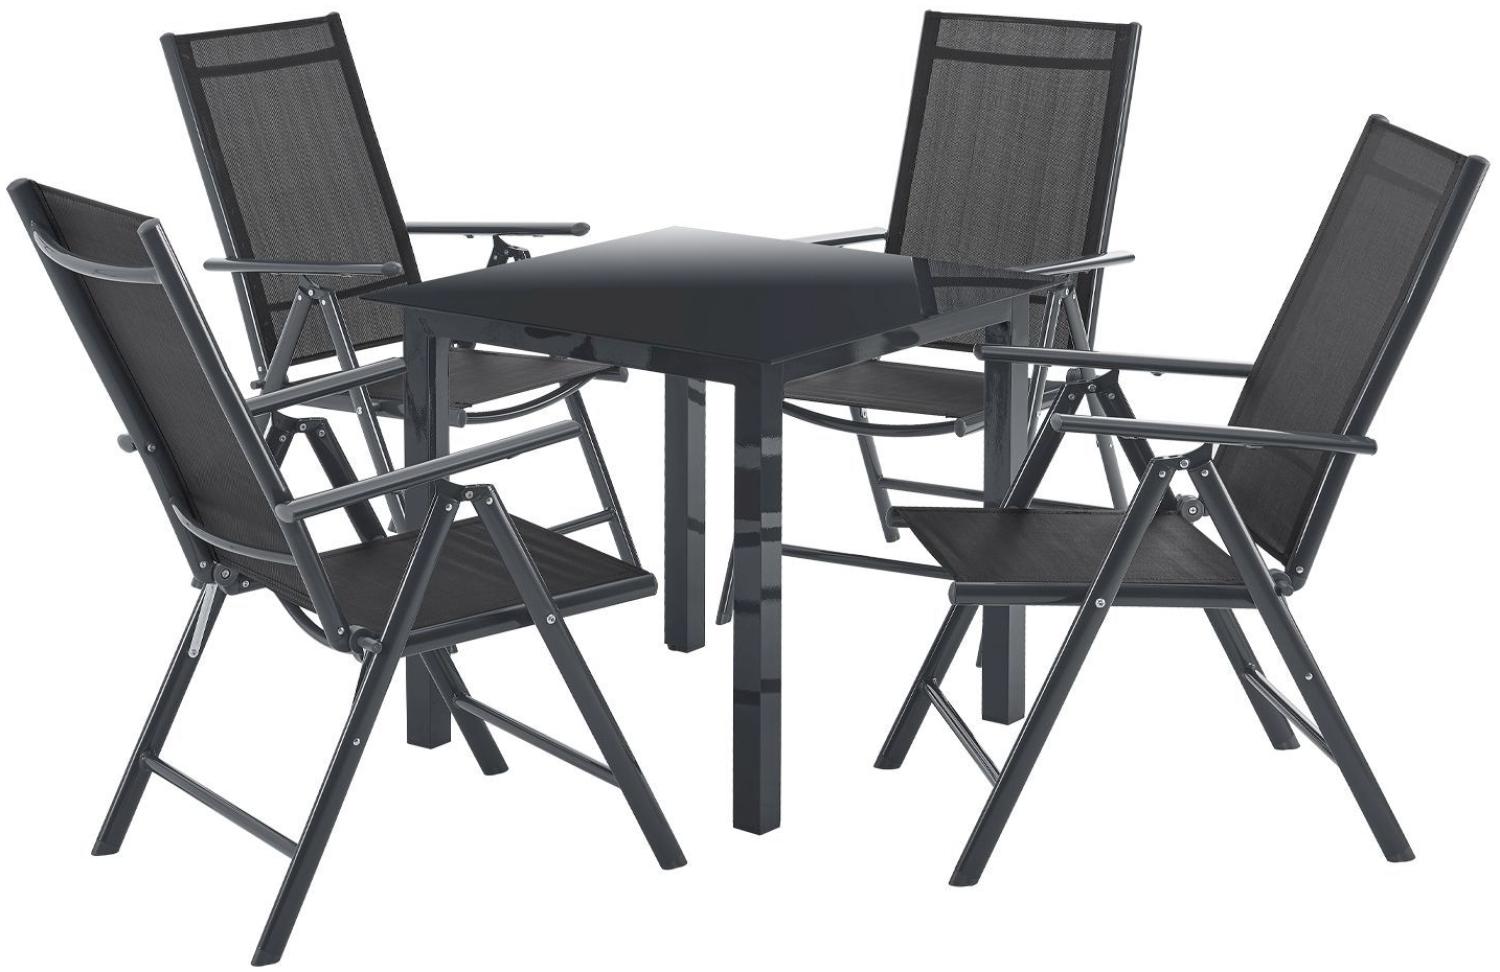 Juskys Aluminium Gartengarnitur Milano Gartenmöbel Set mit Tisch und 4 Stühlen Dunkel-Grau mit schwarzer Kunstfaser Alu Sitzgruppe Balkonmöbel Bild 1